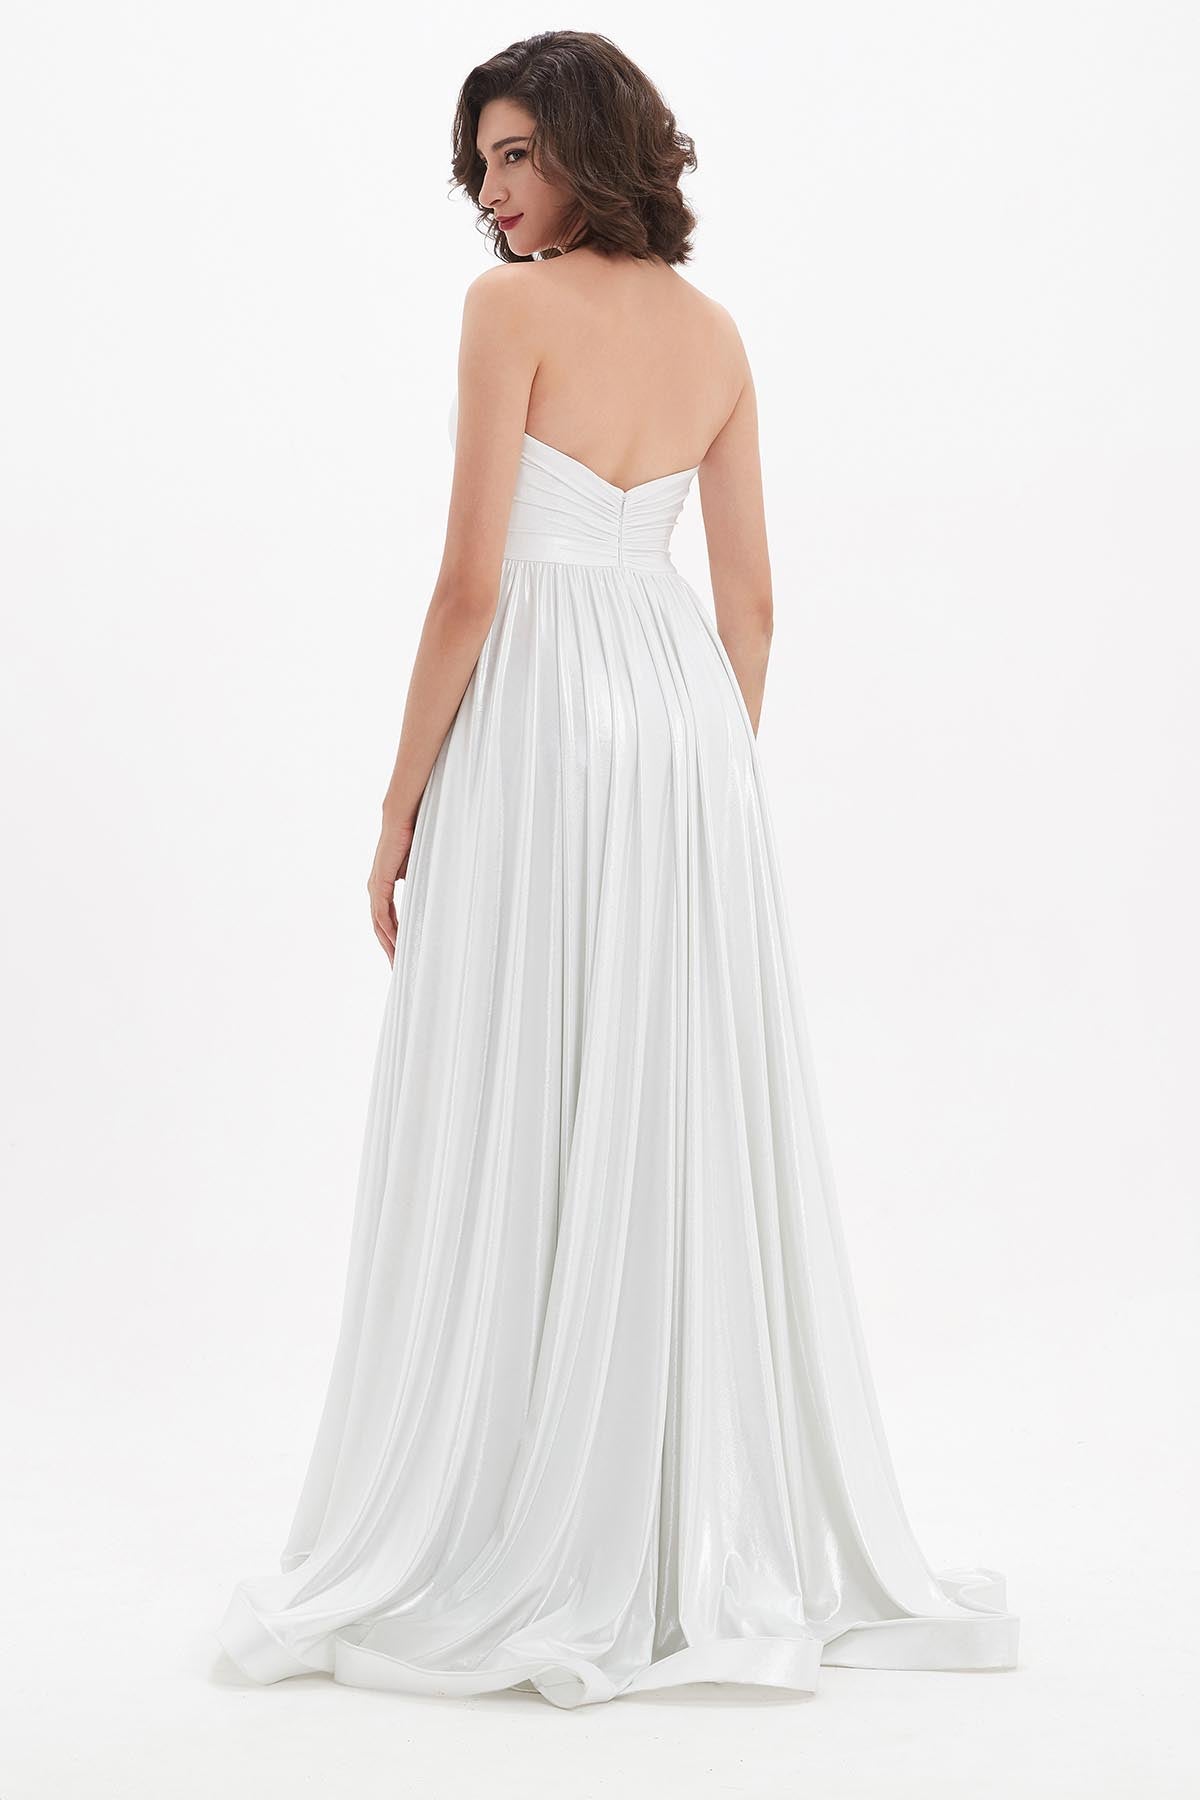 A-line Sweetheart Sleeveless Full Length Polyester Wedding Dresses